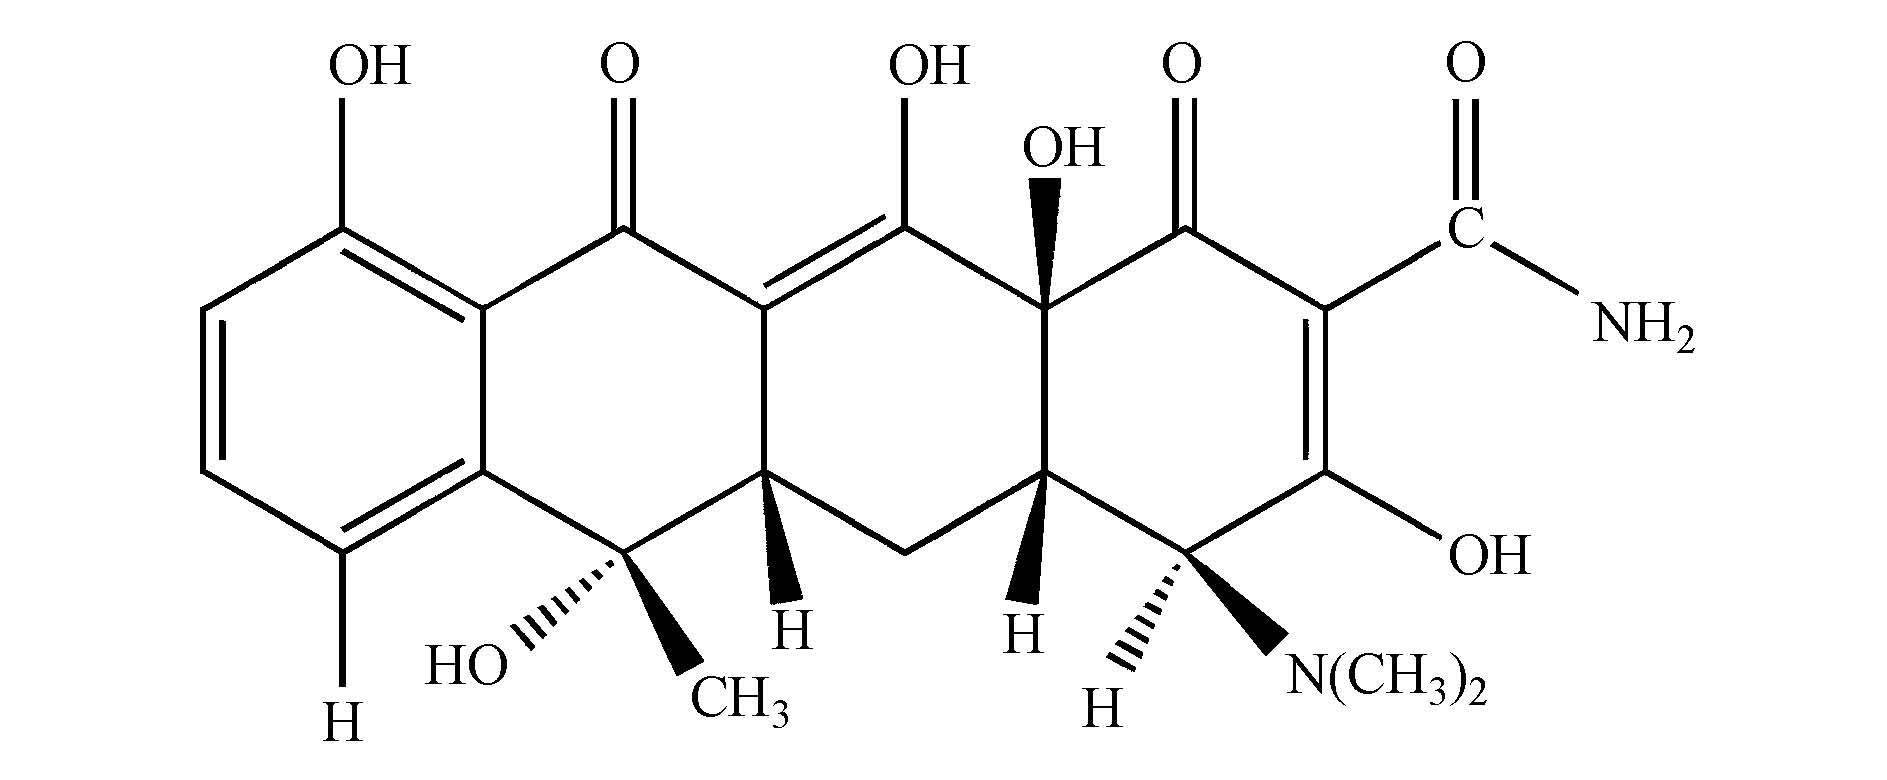 盐酸四环素分子式图片